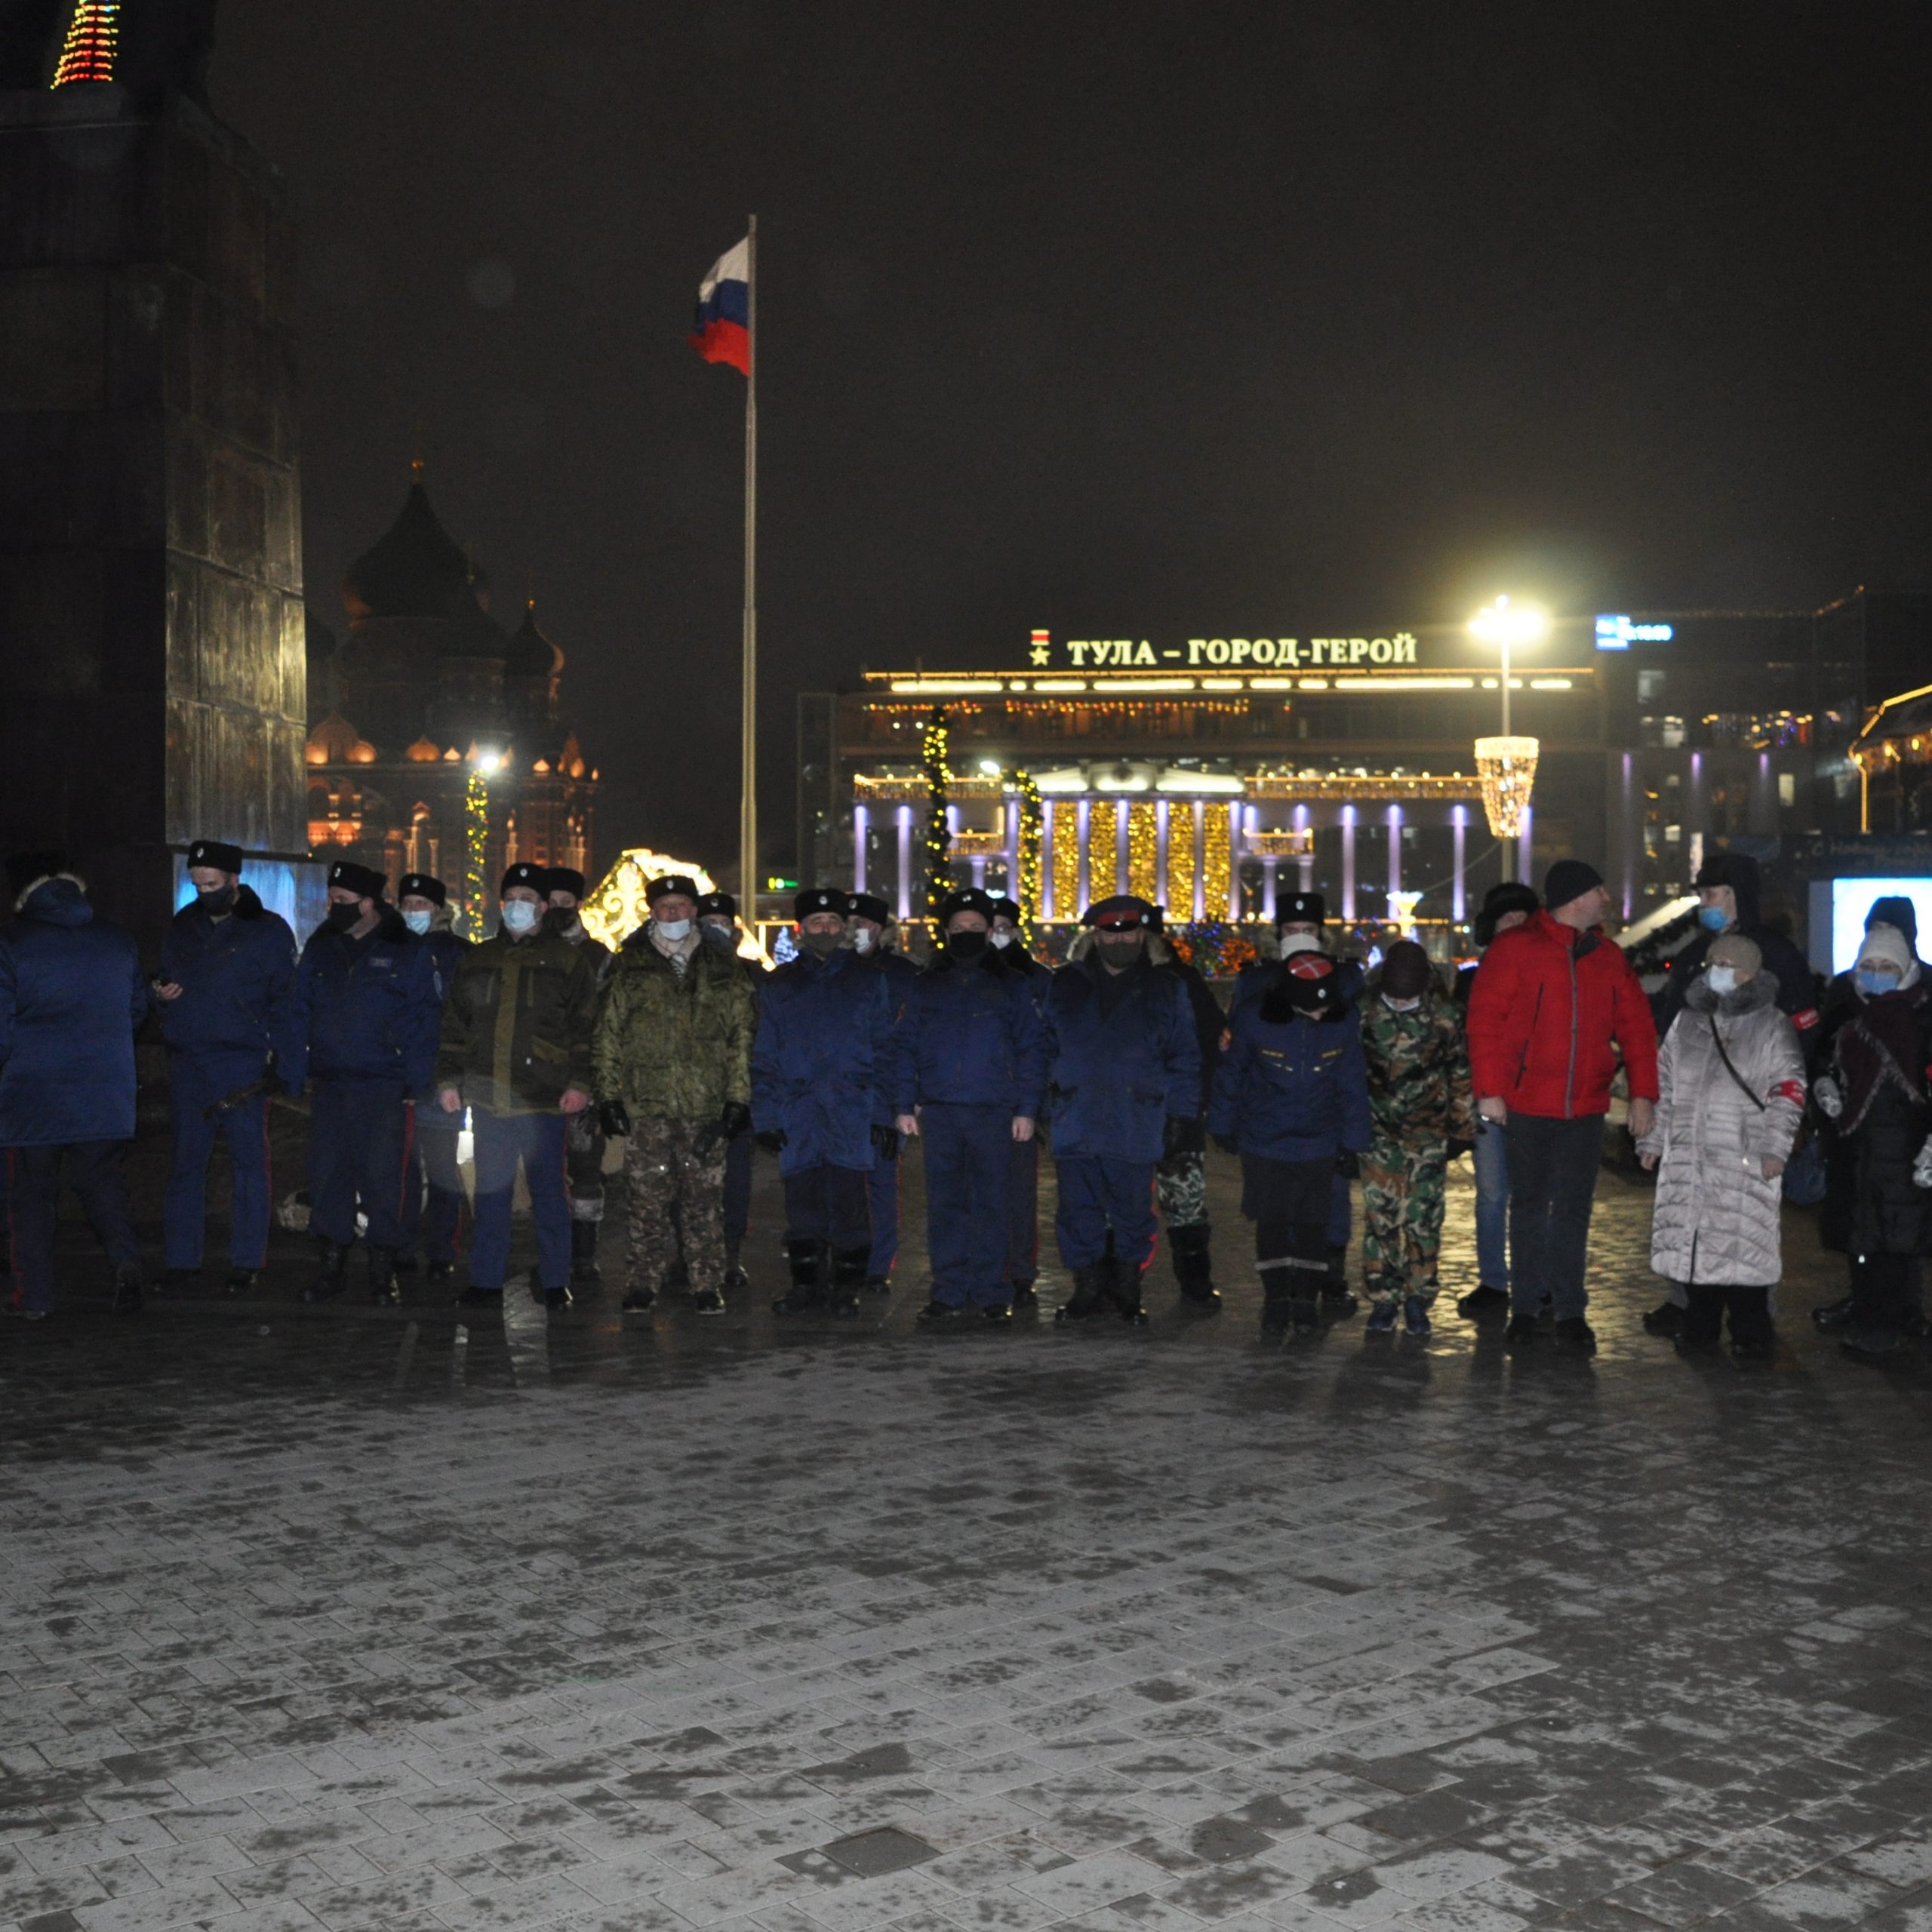 Тульские казаки содействуют полиции в охране общественного порядка в новогоднюю ночь на пл.Ленина.